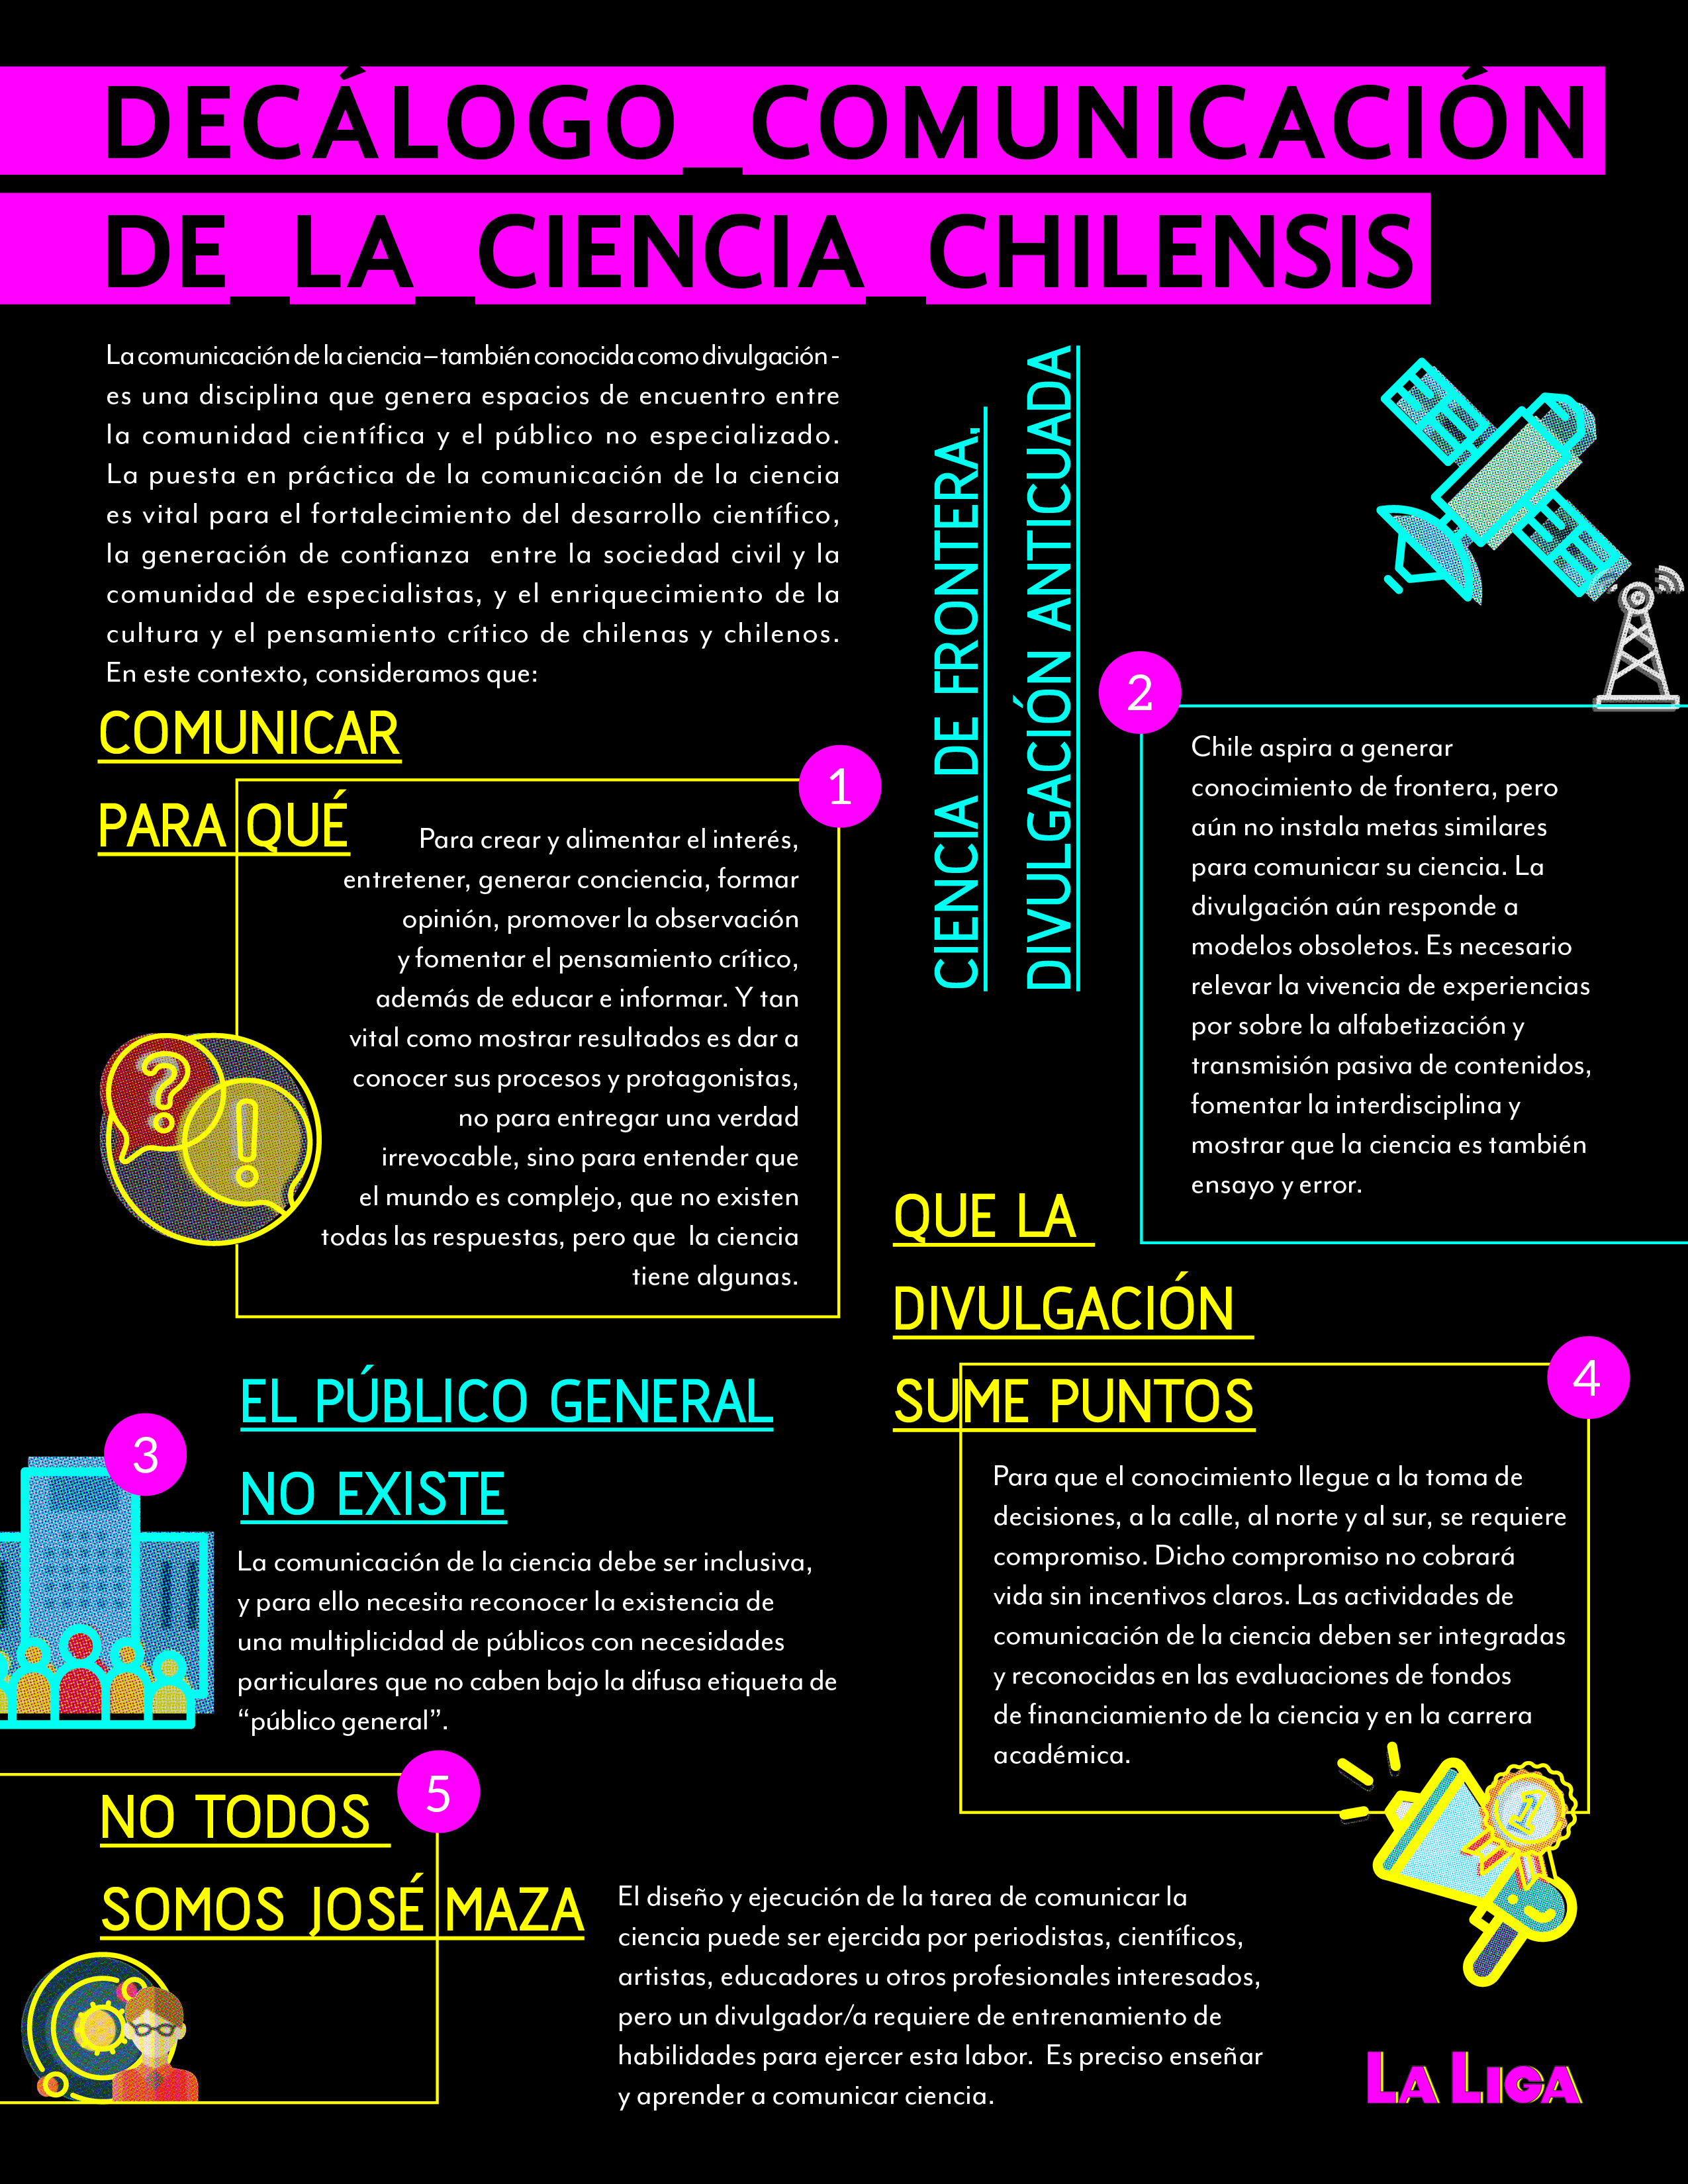 Decálogo: Comunicación de la Ciencia Chilensis